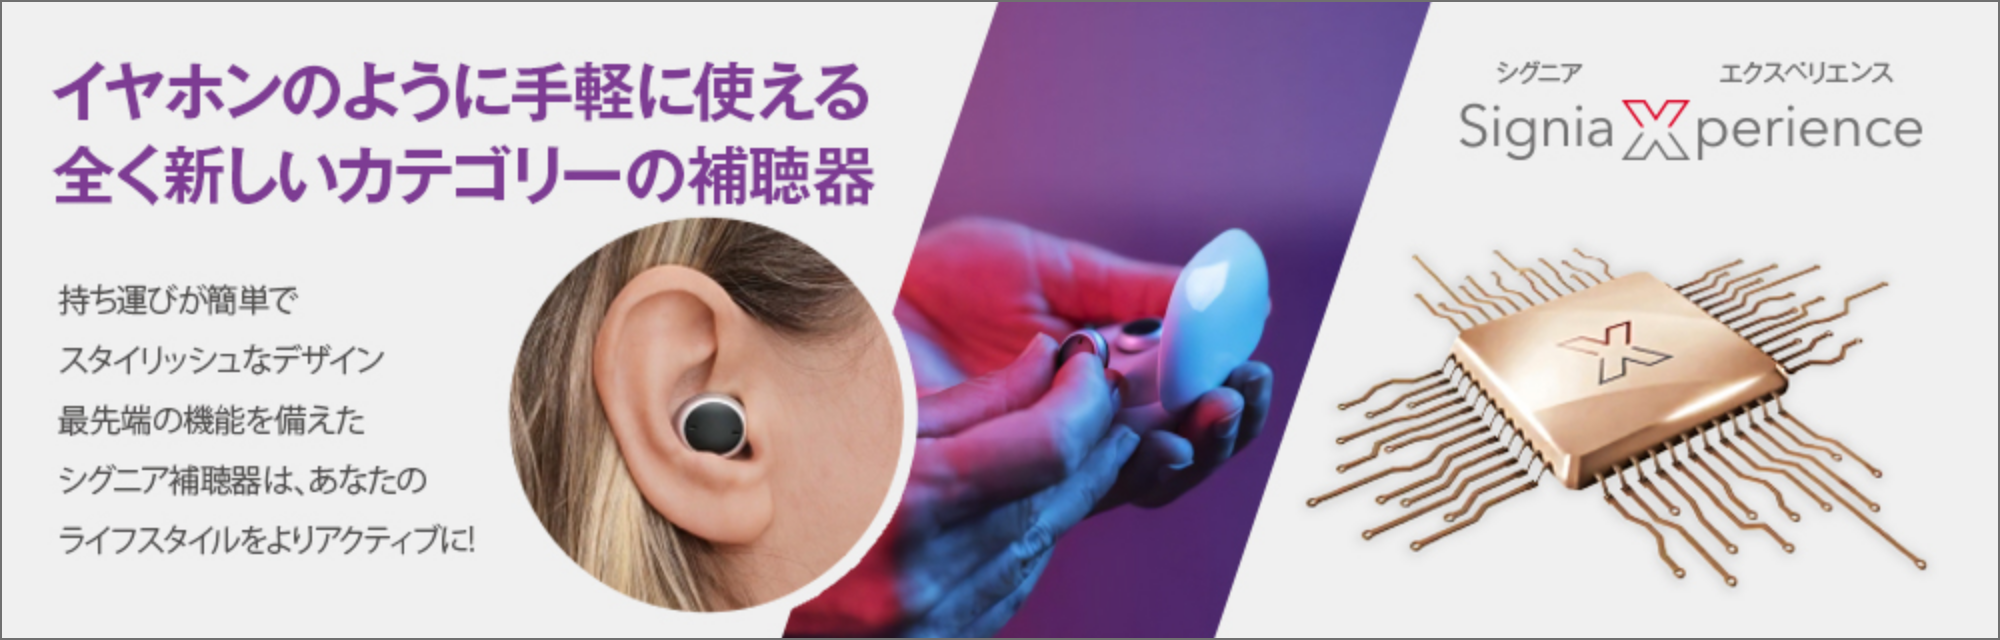 Signia Active｜イヤホンのように手軽に使える全く新しいカテゴリーの補聴器